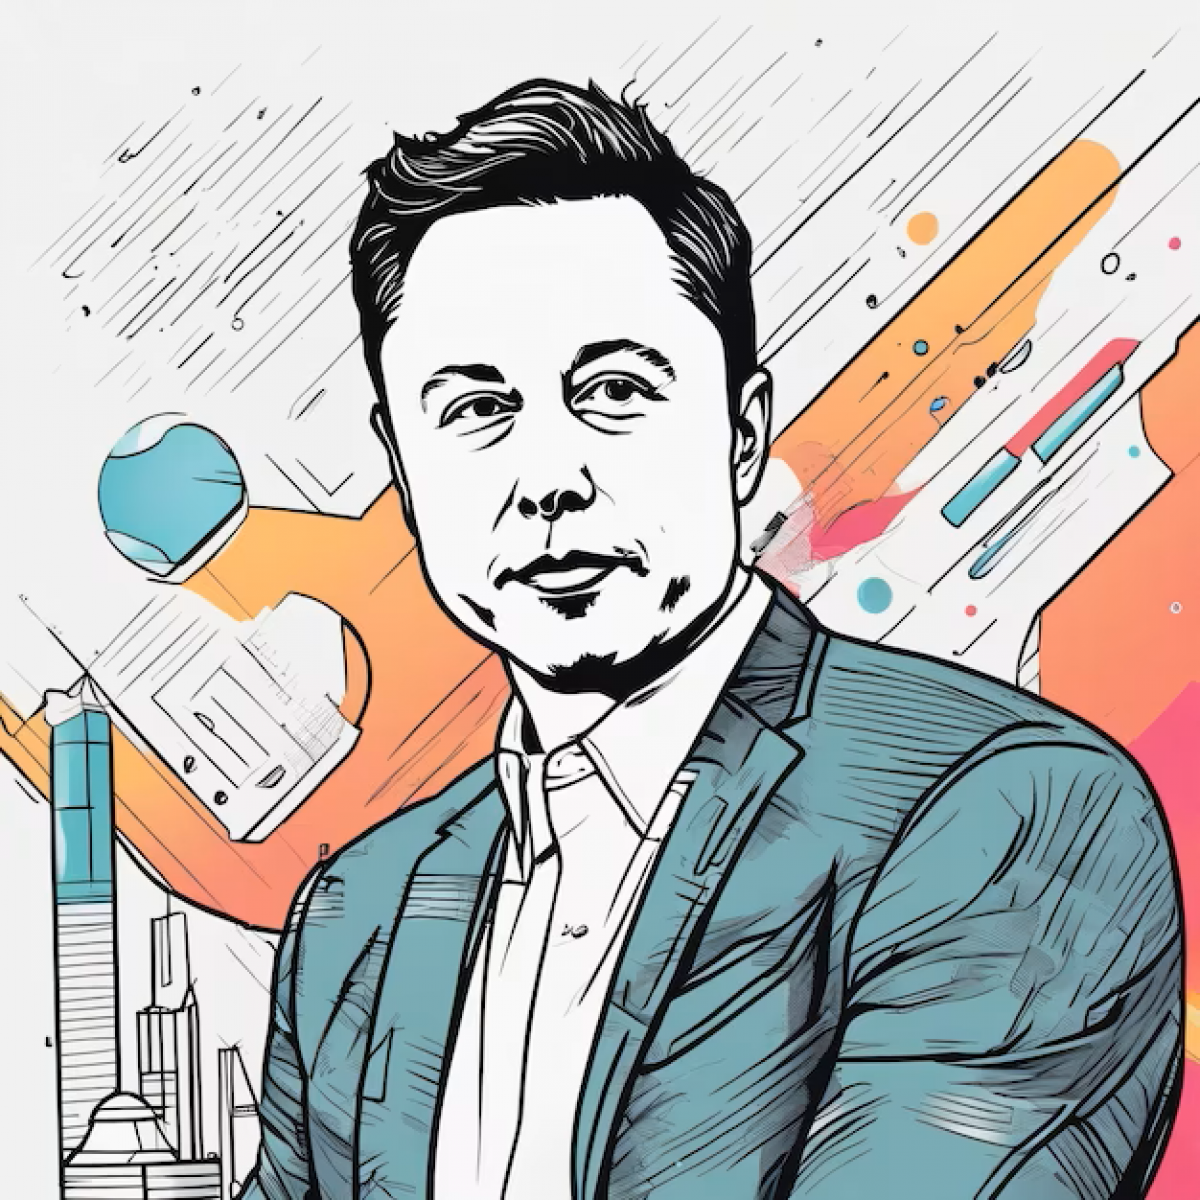 Benned van-e az Elon Musk gén? – vállalkozói személyiségteszt